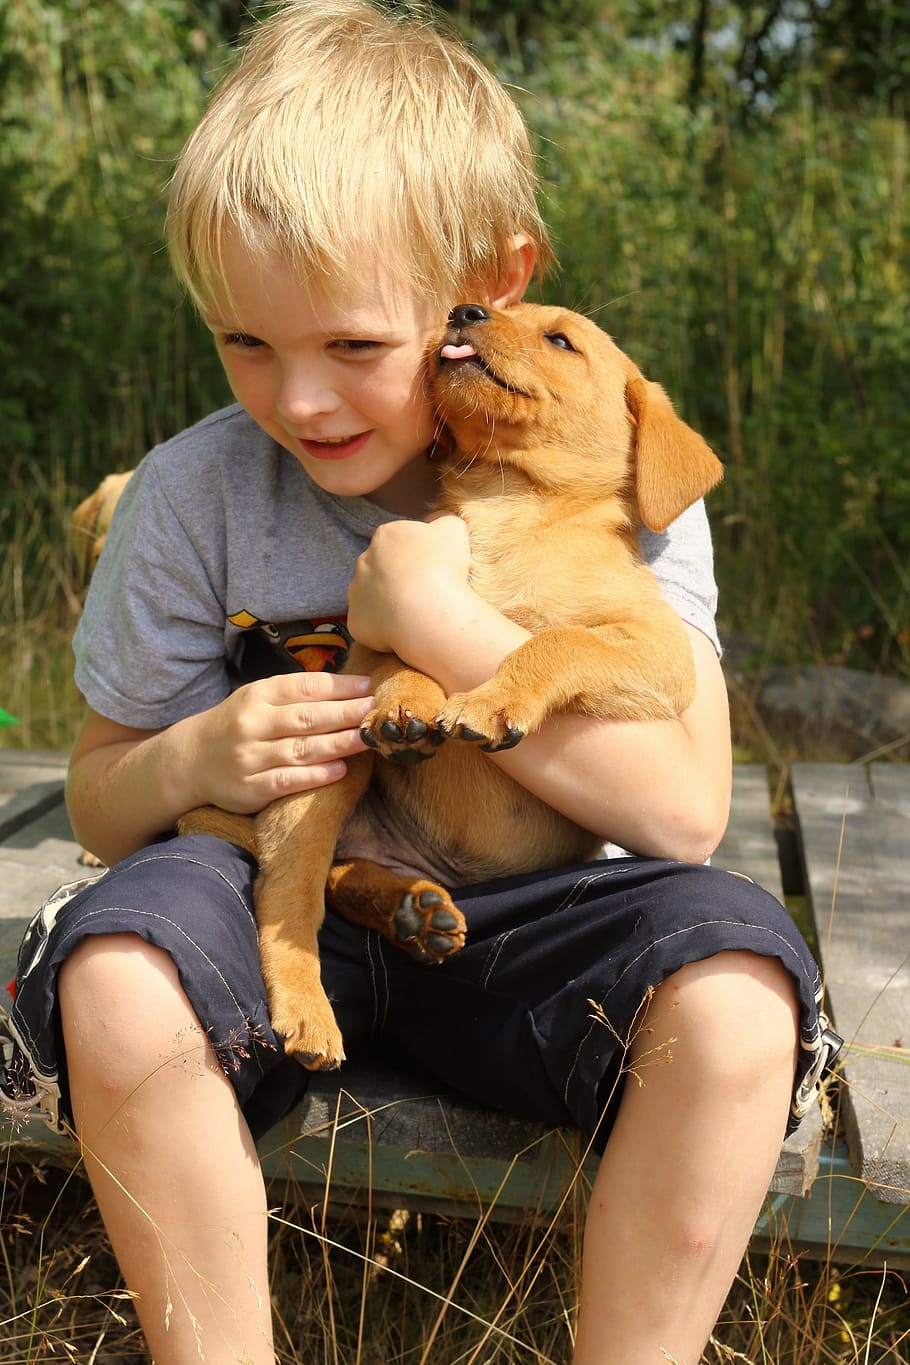 criança abraça cachorro, amigos, criança, abraços, cachorro, crianças, segurando, filhote cachorro, labrador, filhote de cachorro